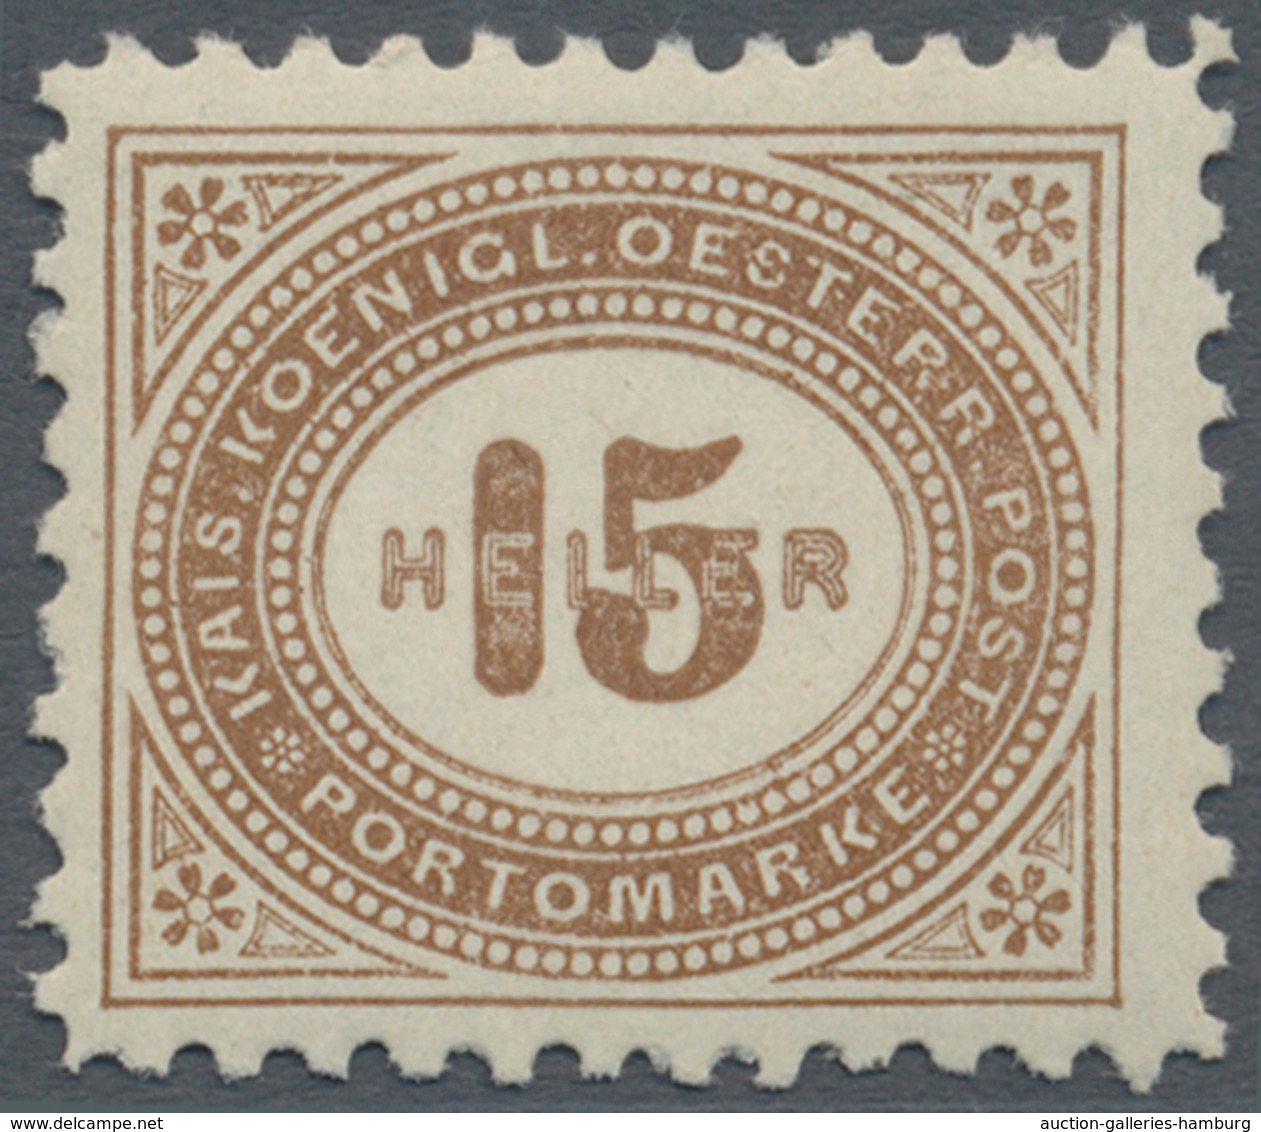 Österreich - Portomarken: 1900, 1 H. bis 100 H. in Kammzähnung und in Linienzähnung L 10½, zwei komp